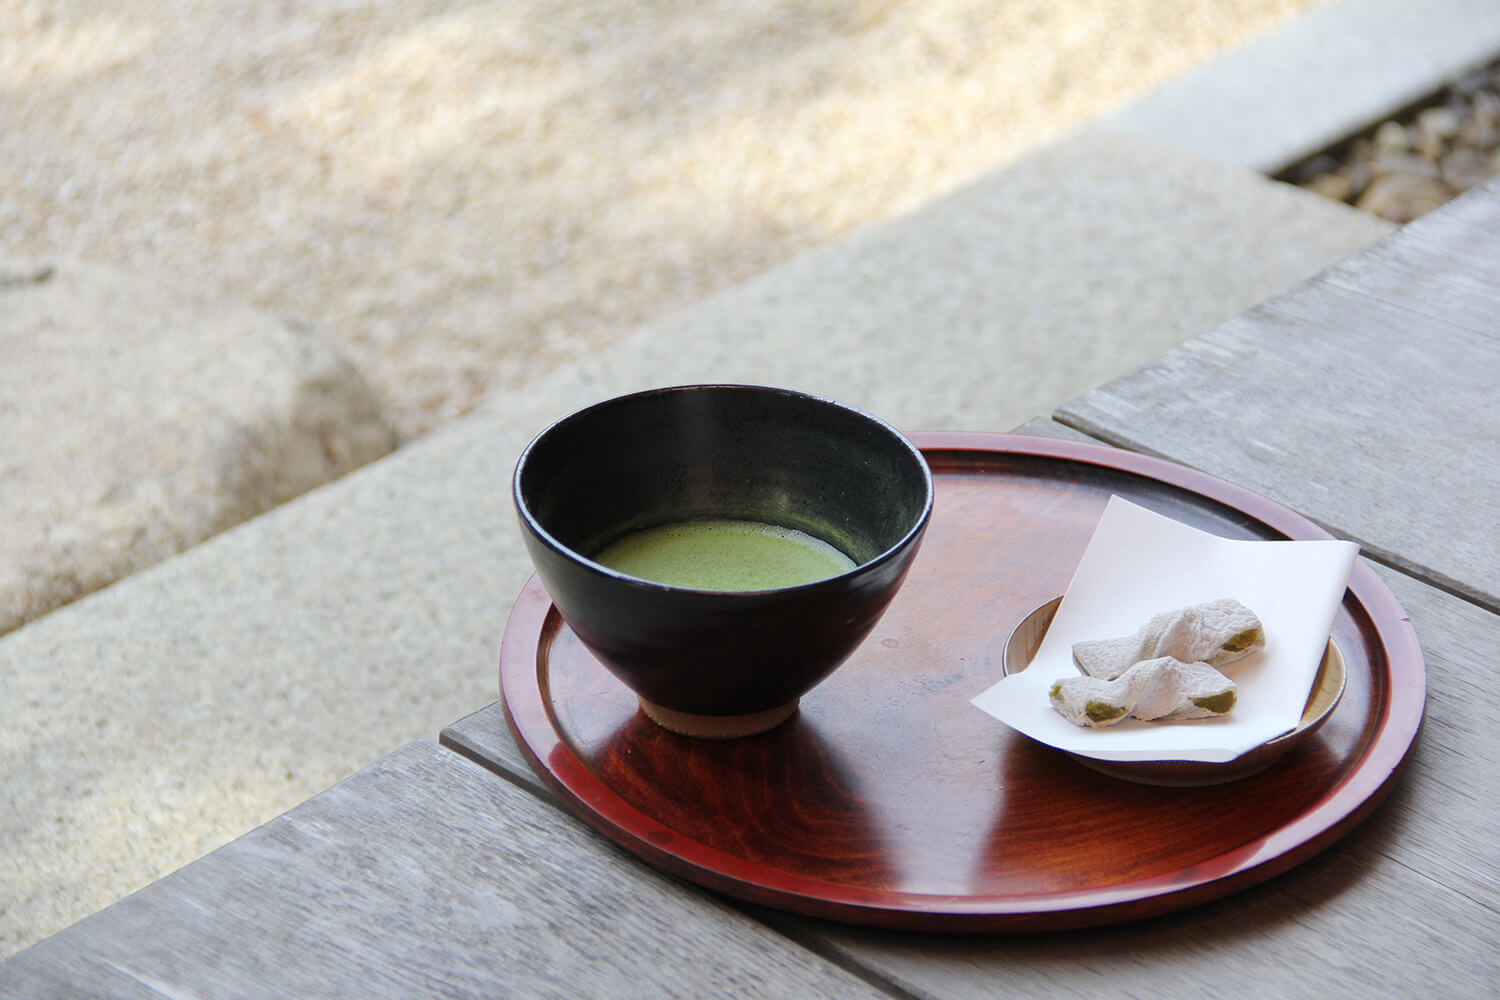 抹茶と松江銘菓のセットは一服450円。日本庭園を眺めながら、松江の茶文化を五感で体験できる